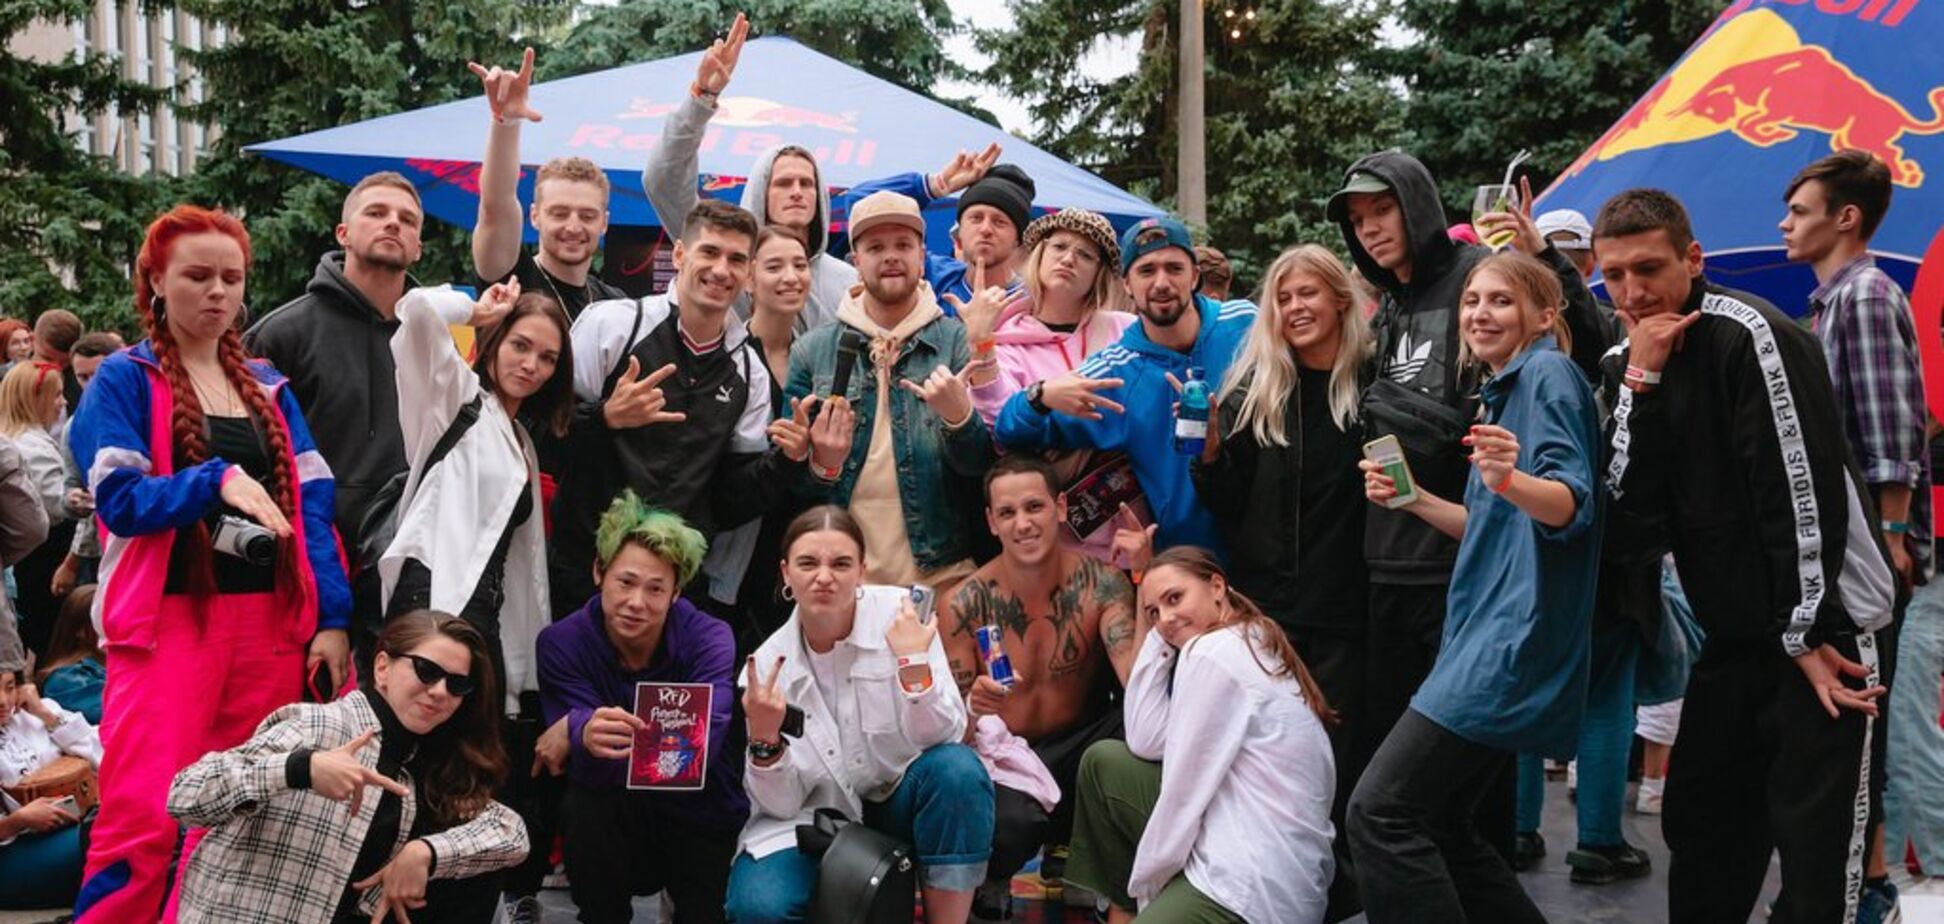 В Киеве и Одессе прошли отборы Red Bull Dance Your Style